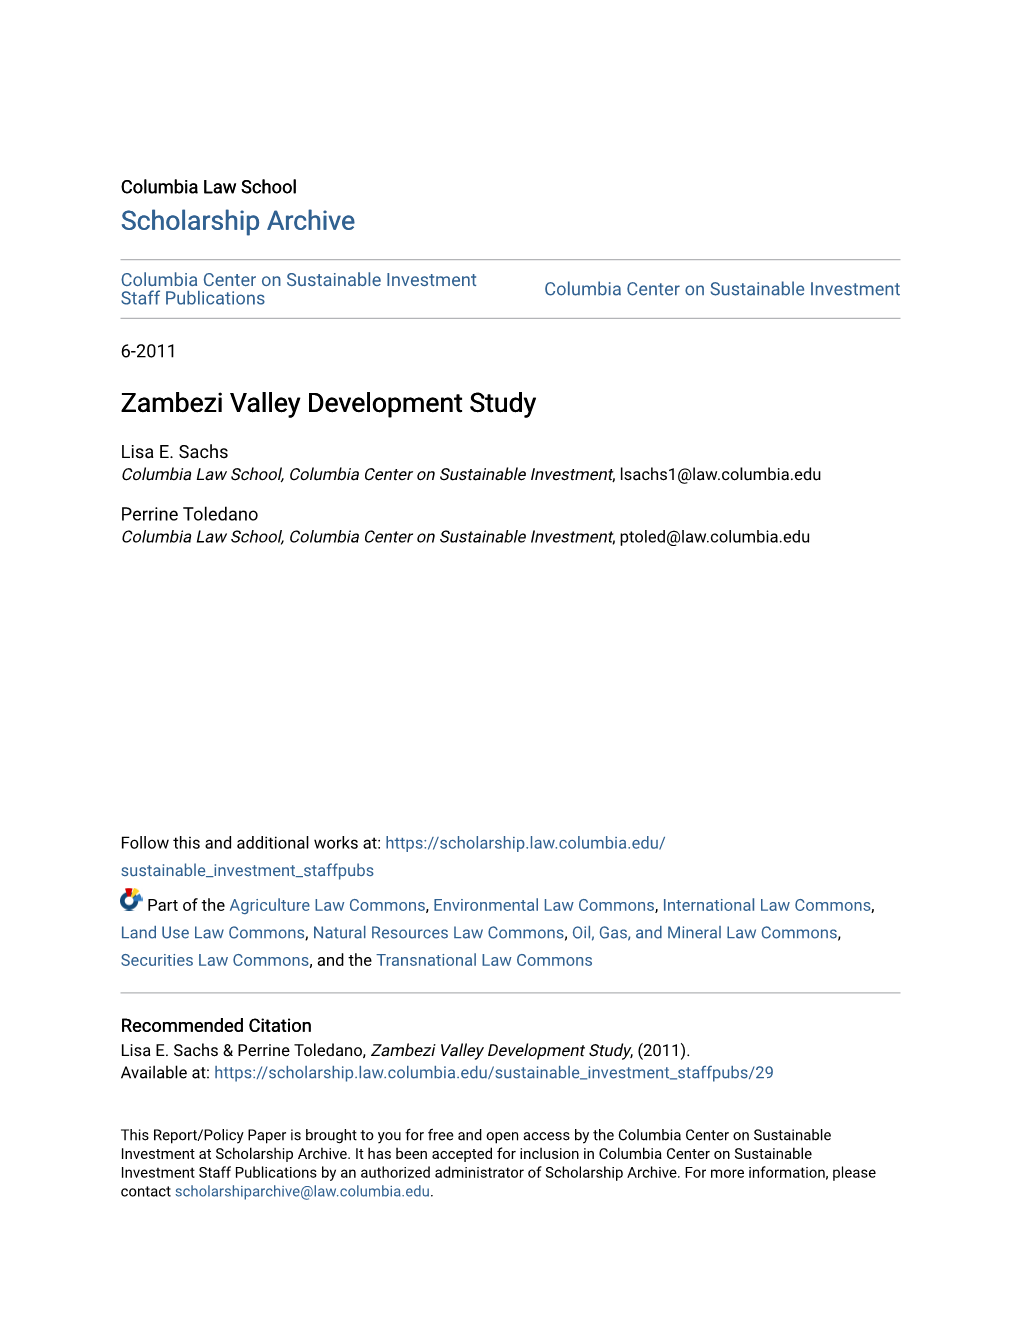 Zambezi Valley Development Study